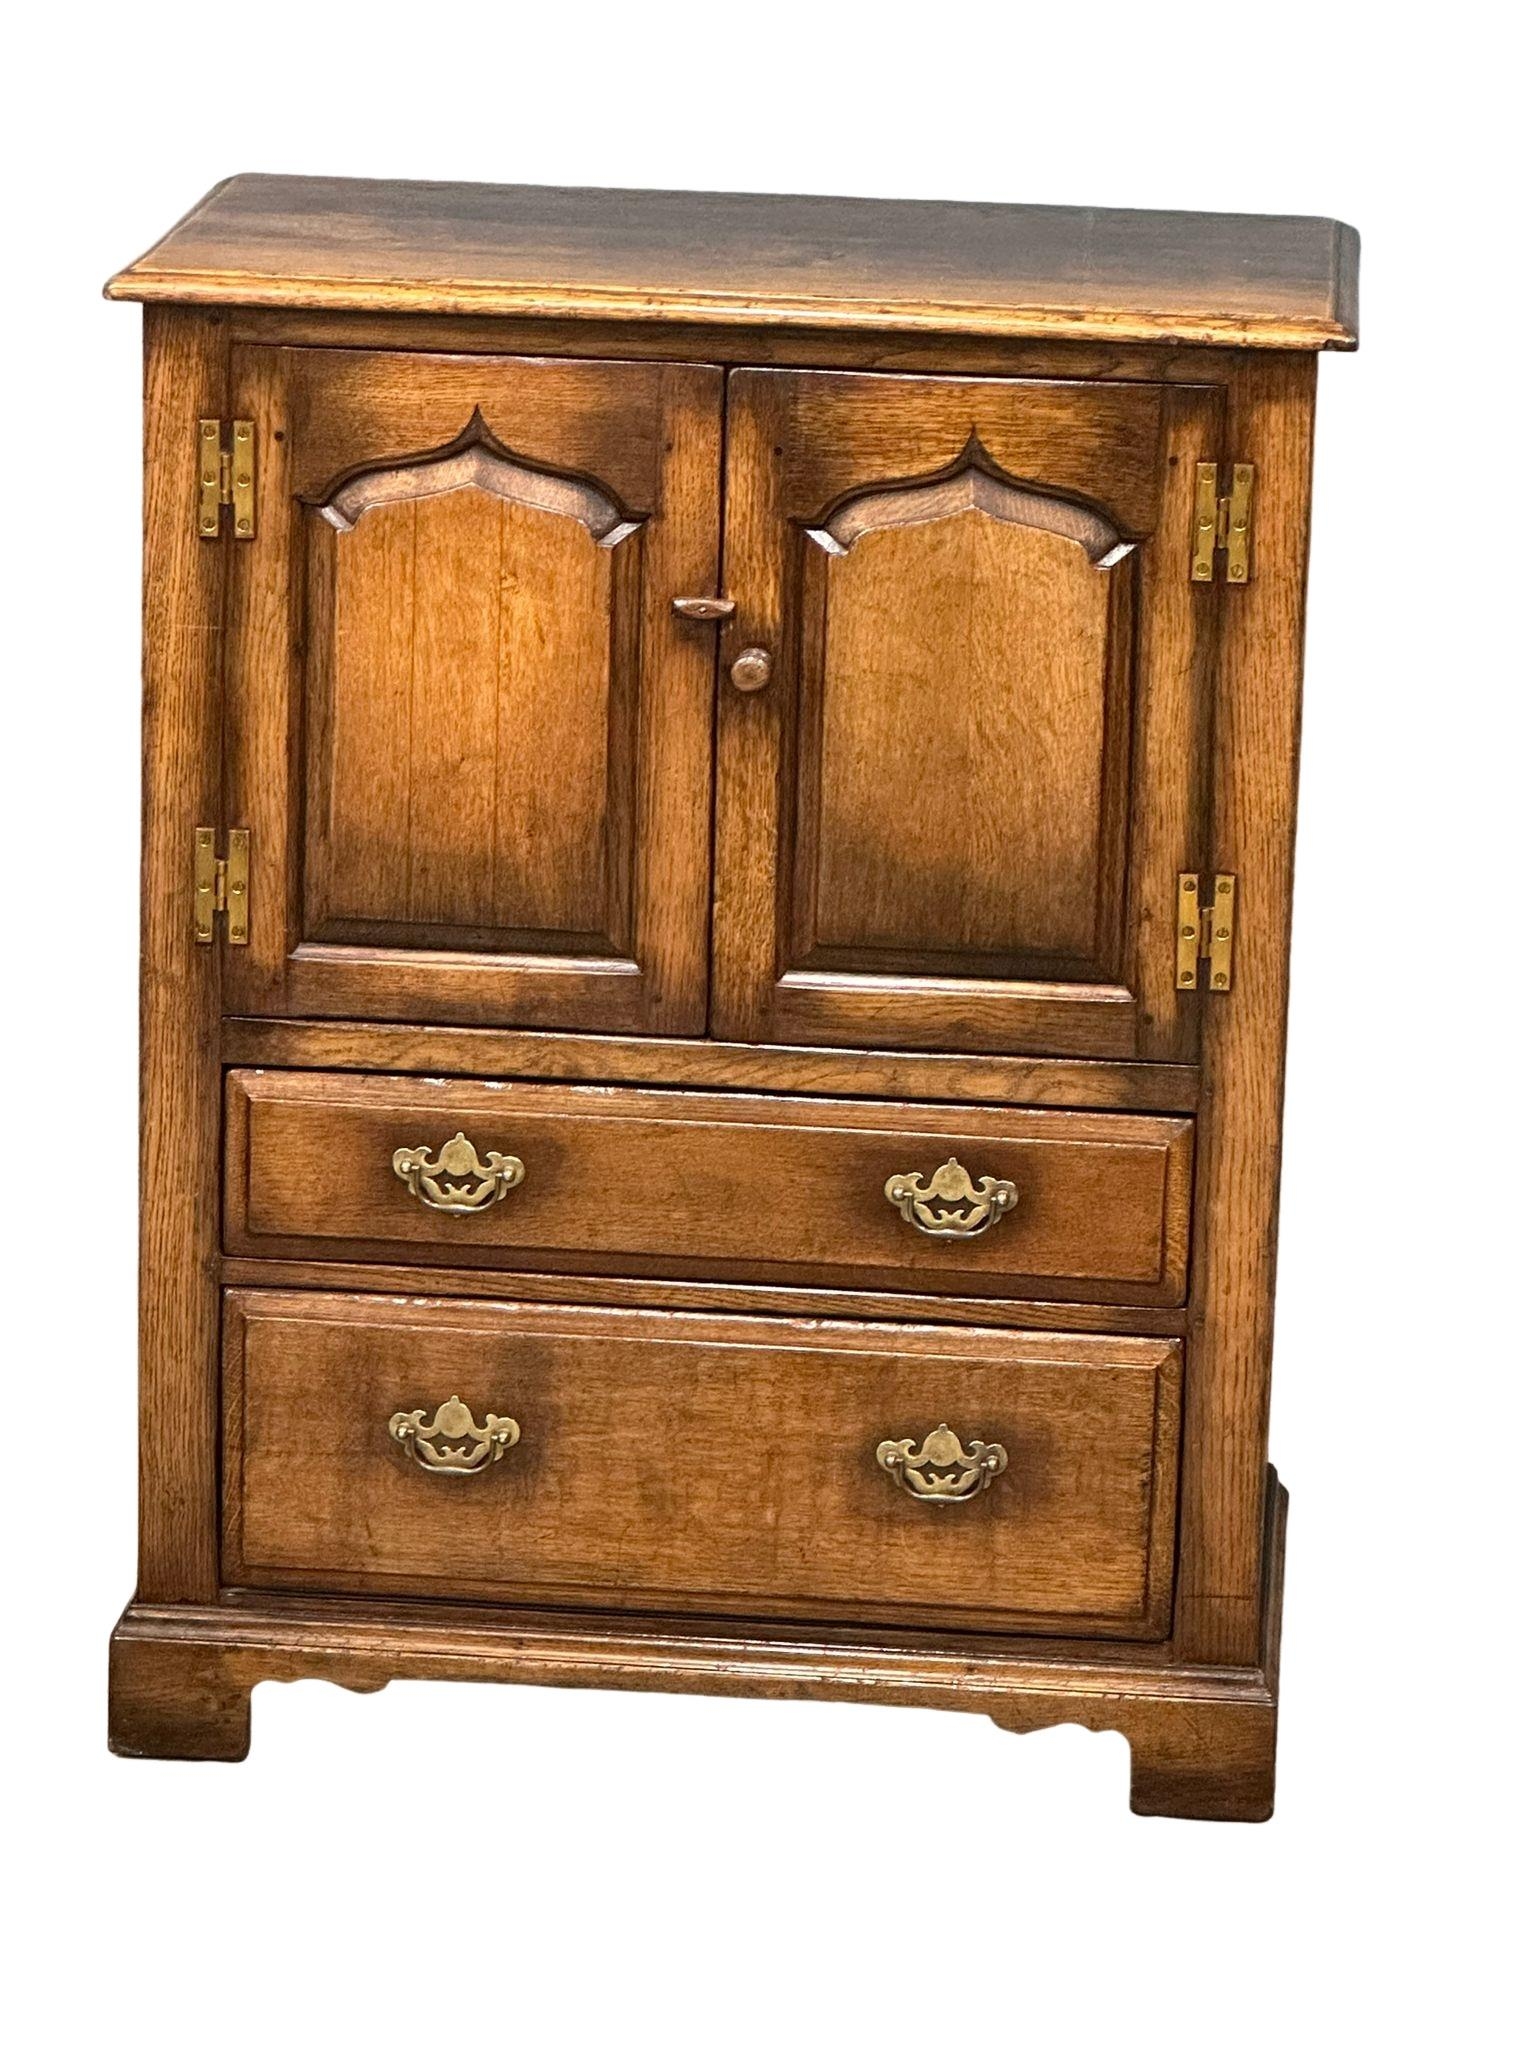 A George III style Ipswich oak side cabinet. 81x47x103cm